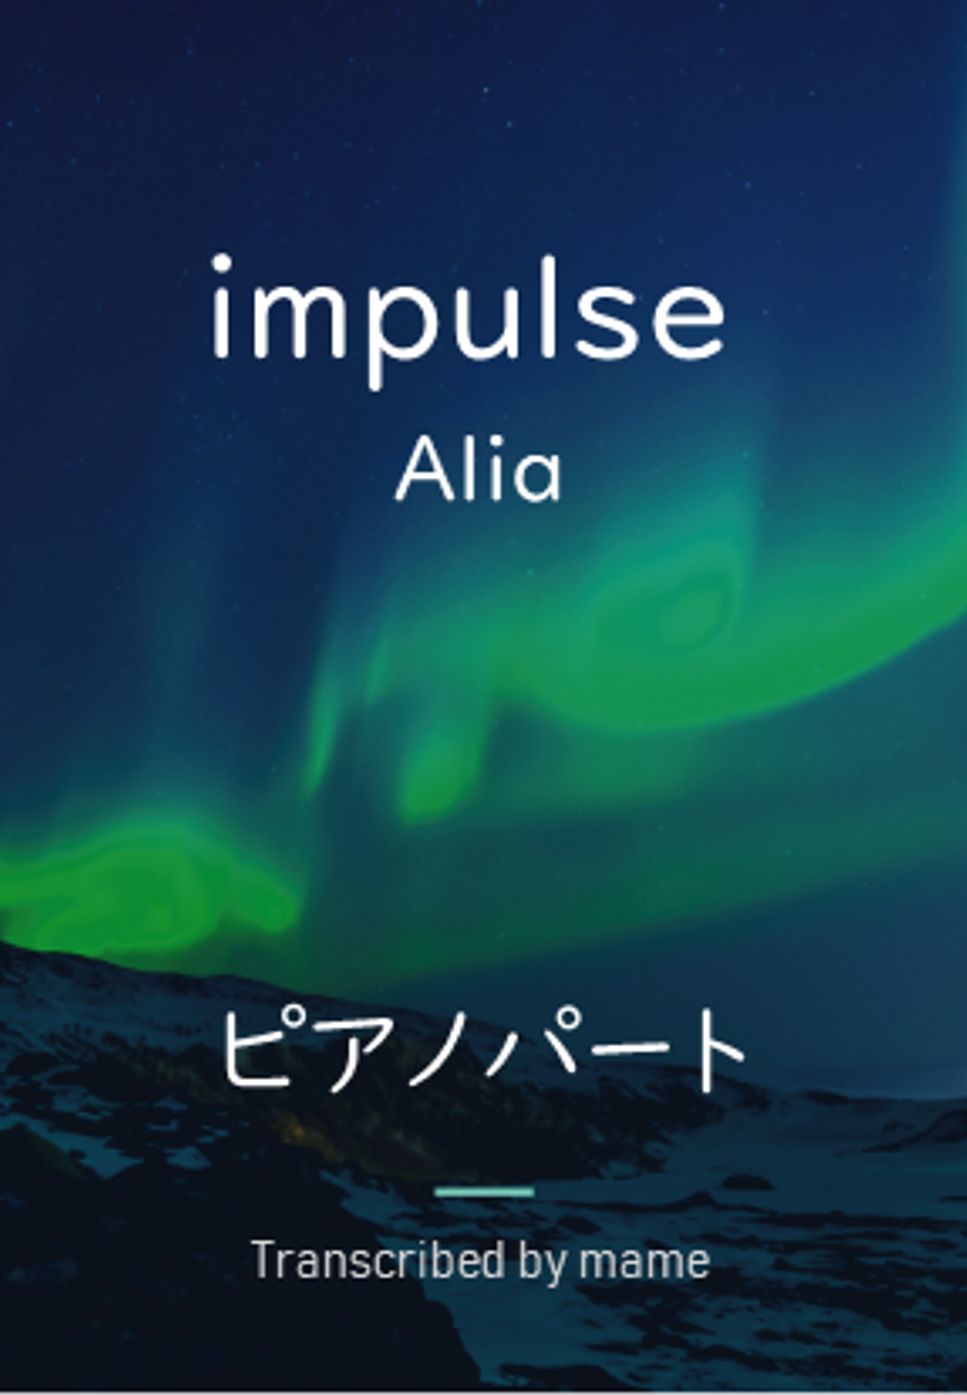 Alia - impulse (piano part) by mame